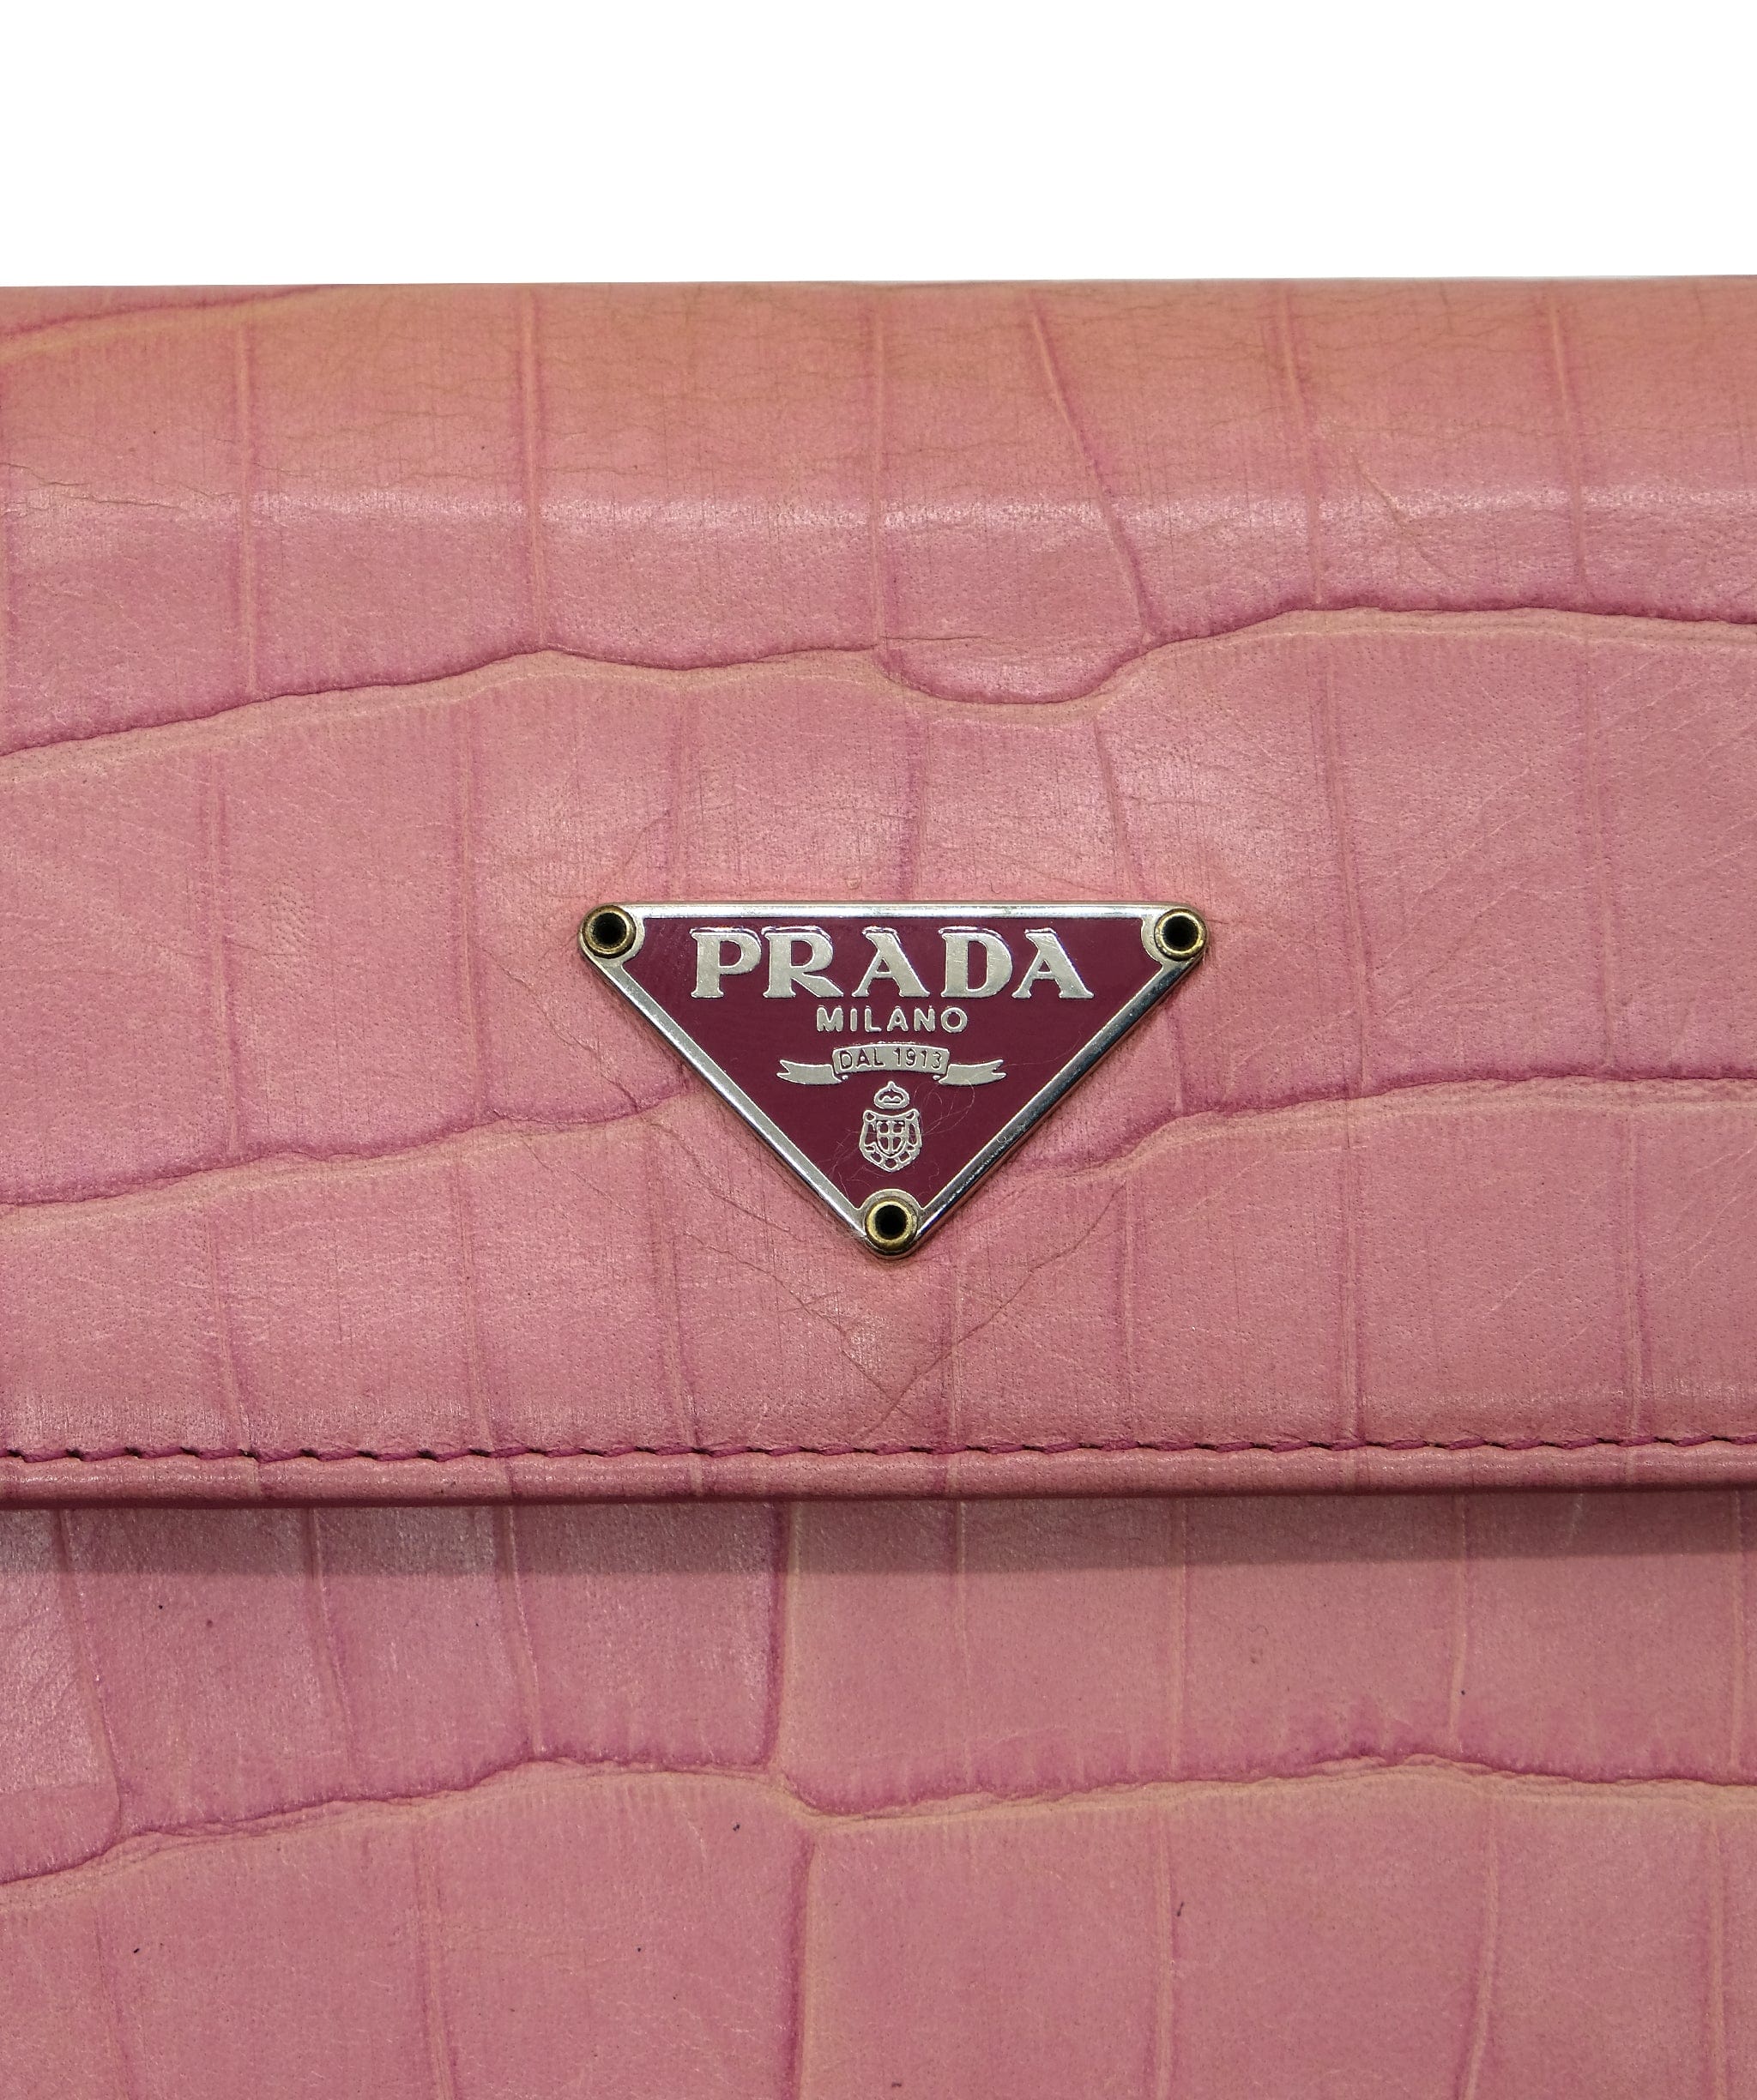 Prada Prada tri fold wallet pink crocodile RJC2929